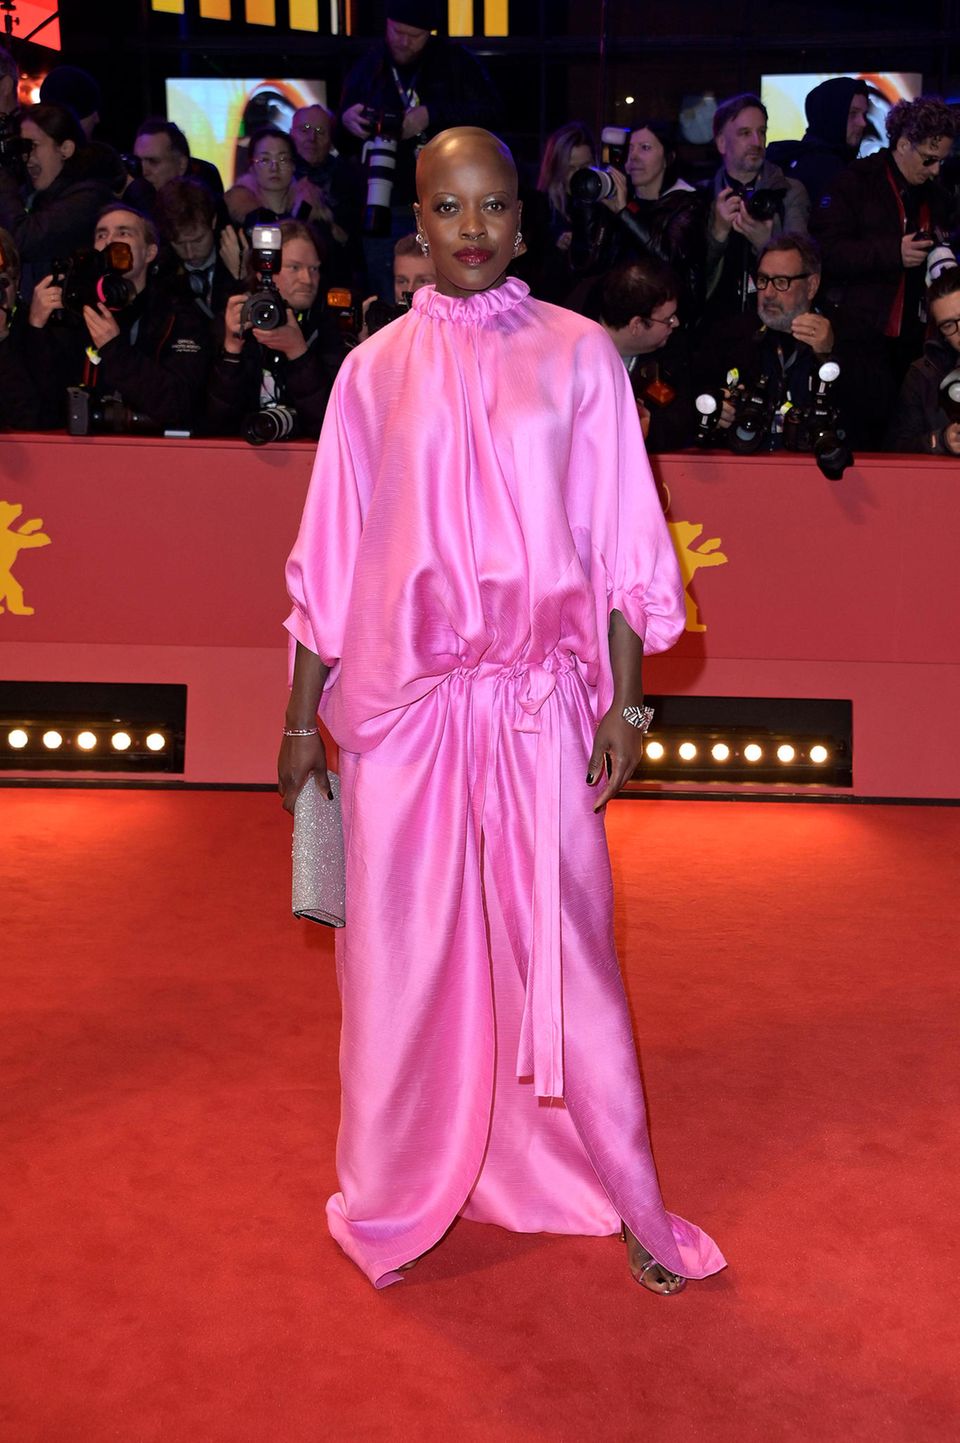 Knallig schön ist auch der stylische Seiden-Look in Barbie-Pink von Florence Kasumba.